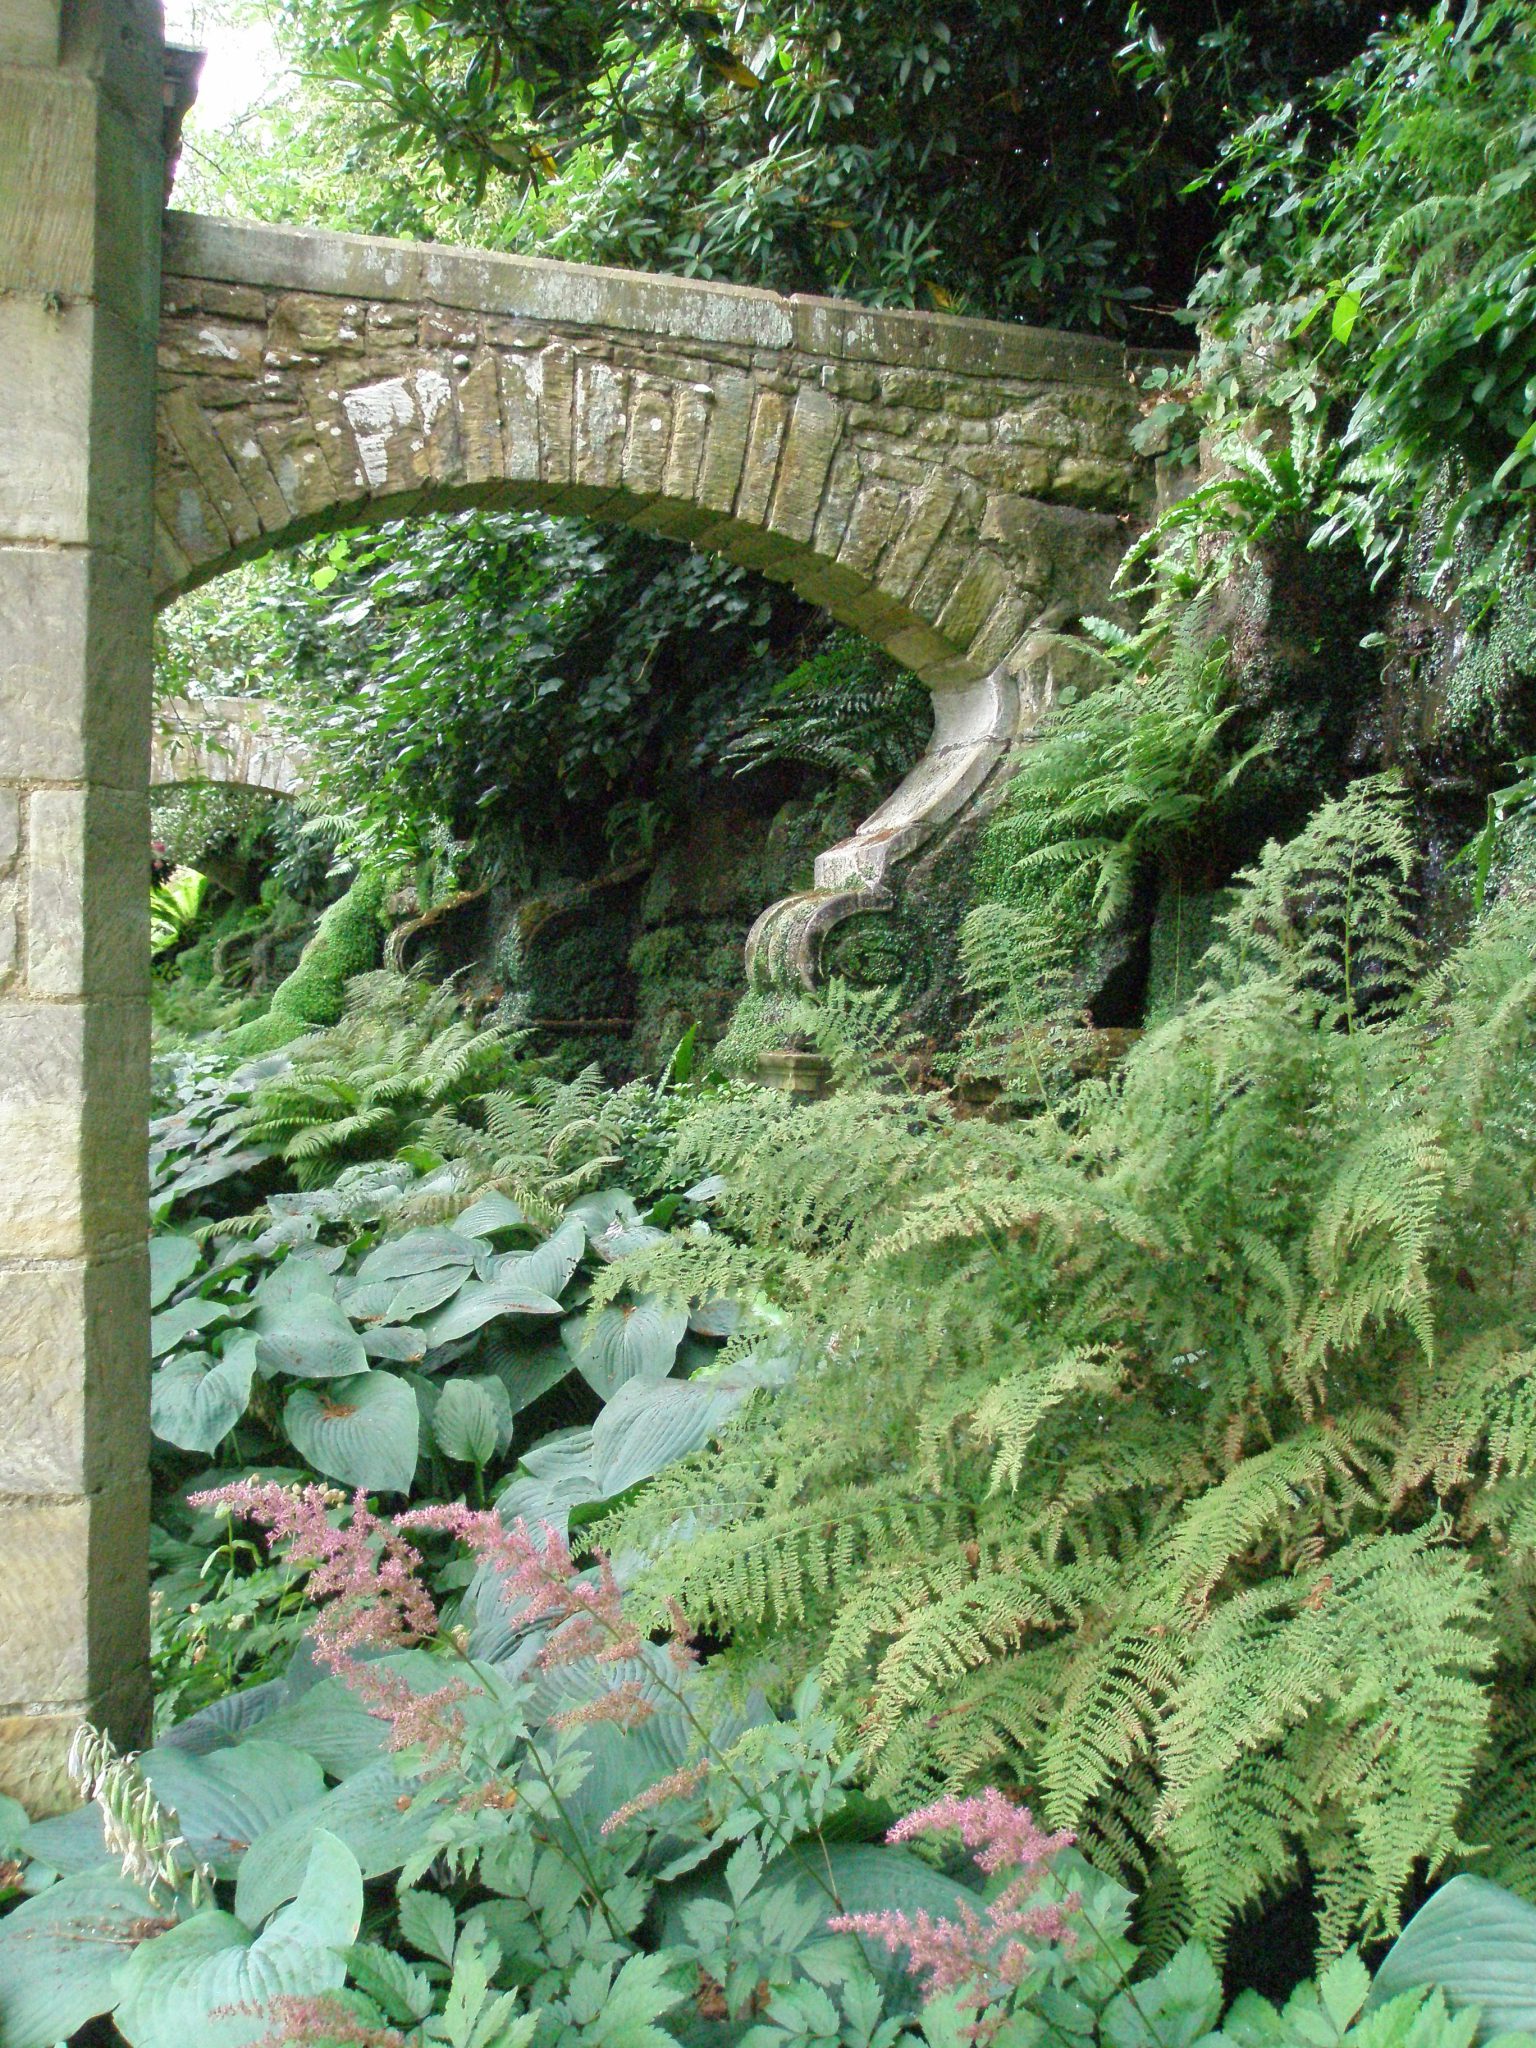 Massive stone arches support the Grotto walls